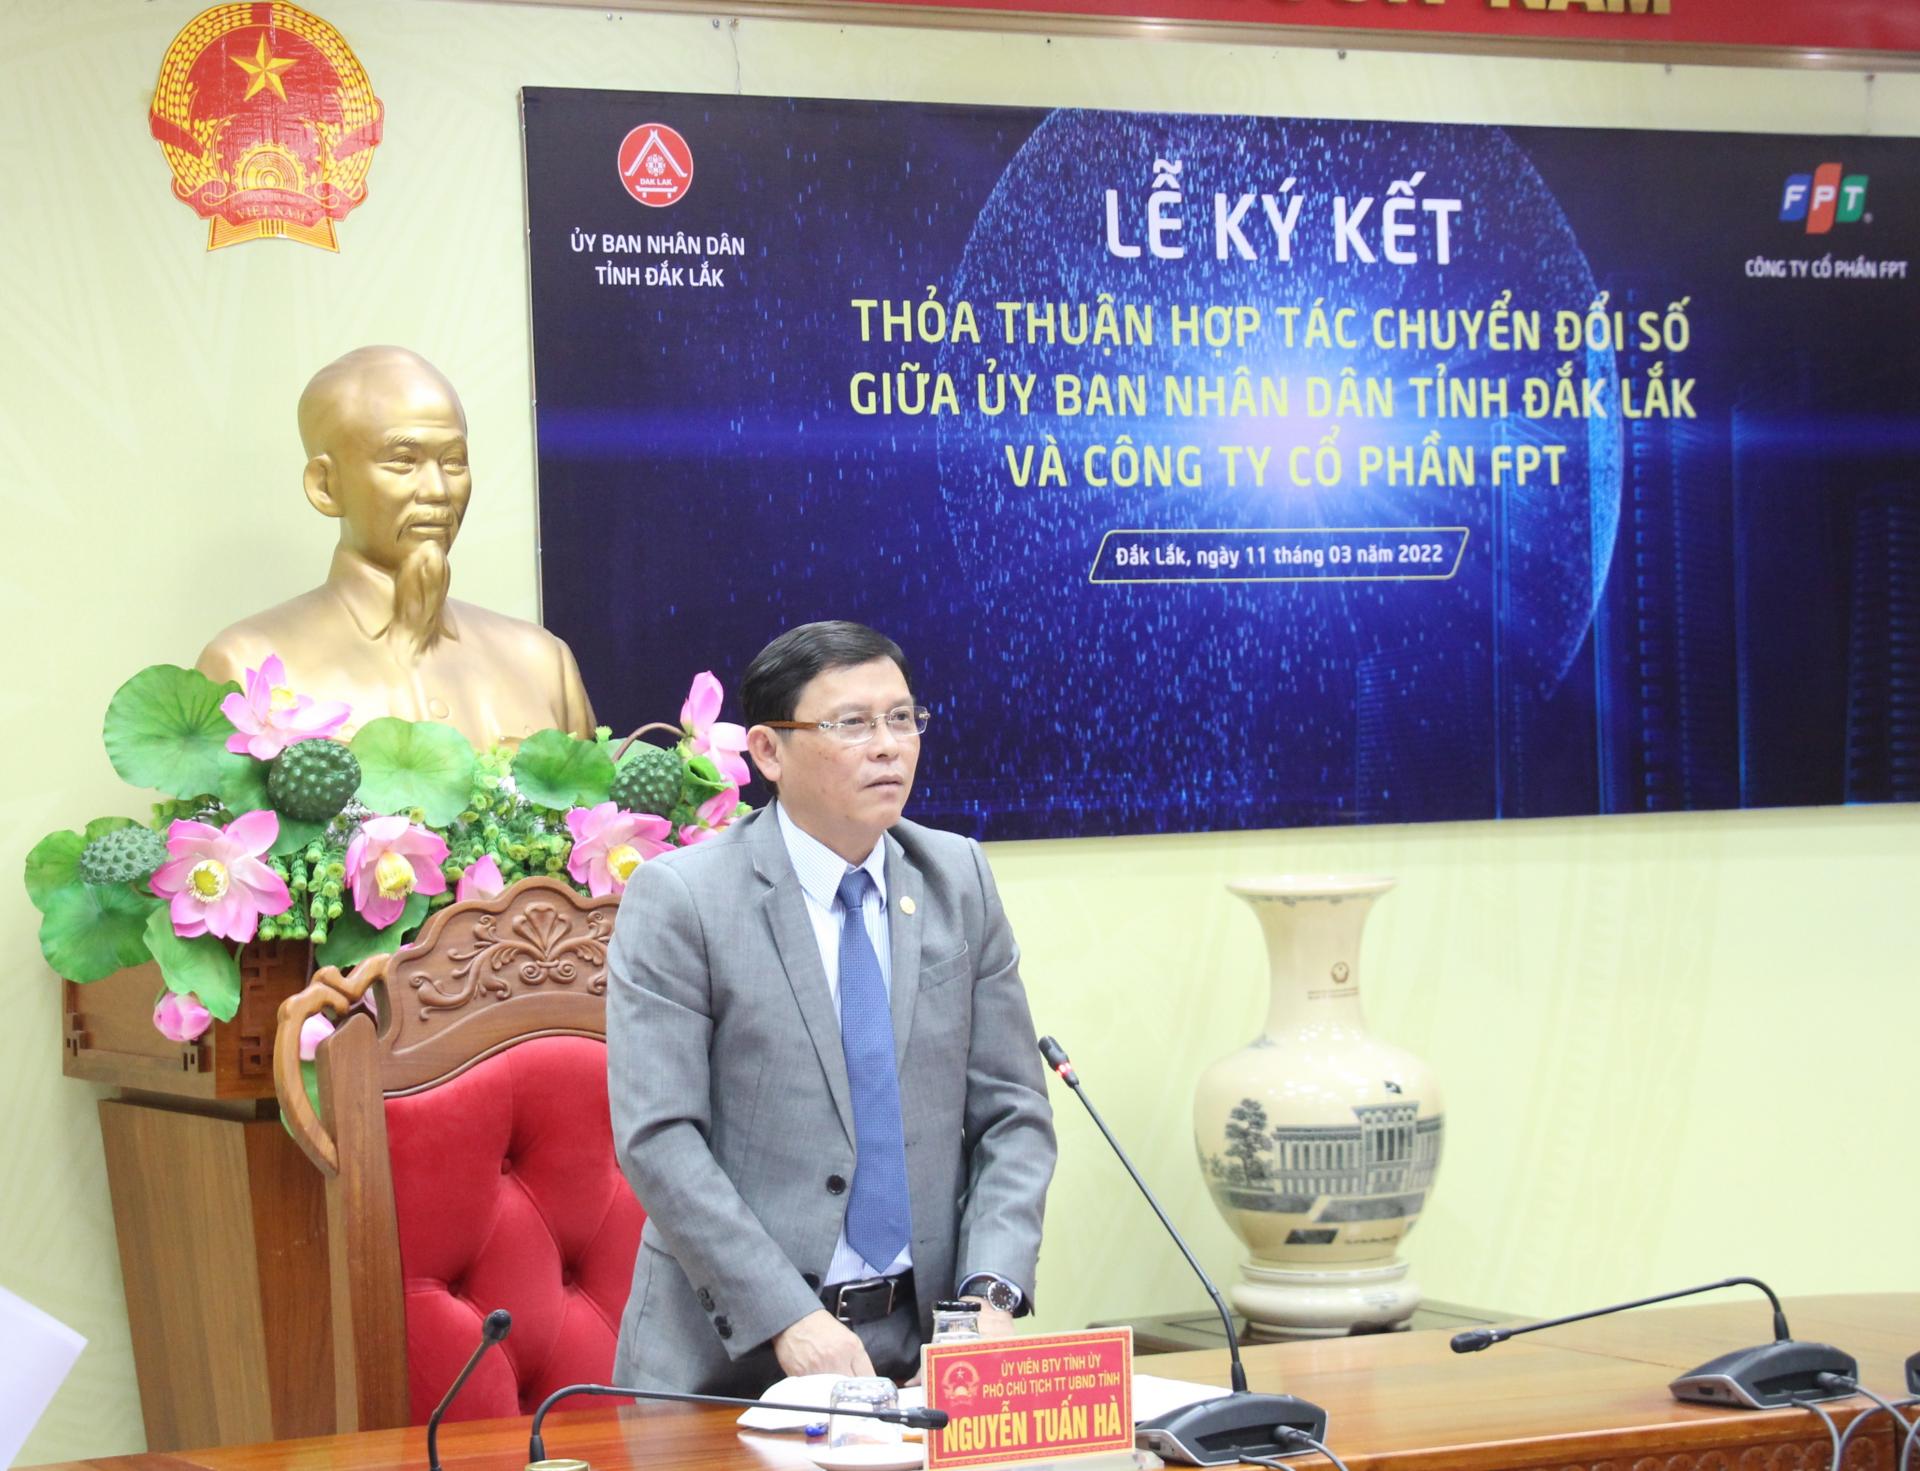 Kế hoạch thực hiện Thỏa thuận hợp tác chuyển đổi số giữa tỉnh Đắk Lắk và Công ty Cổ phần FPT giai đoạn 2022-2025